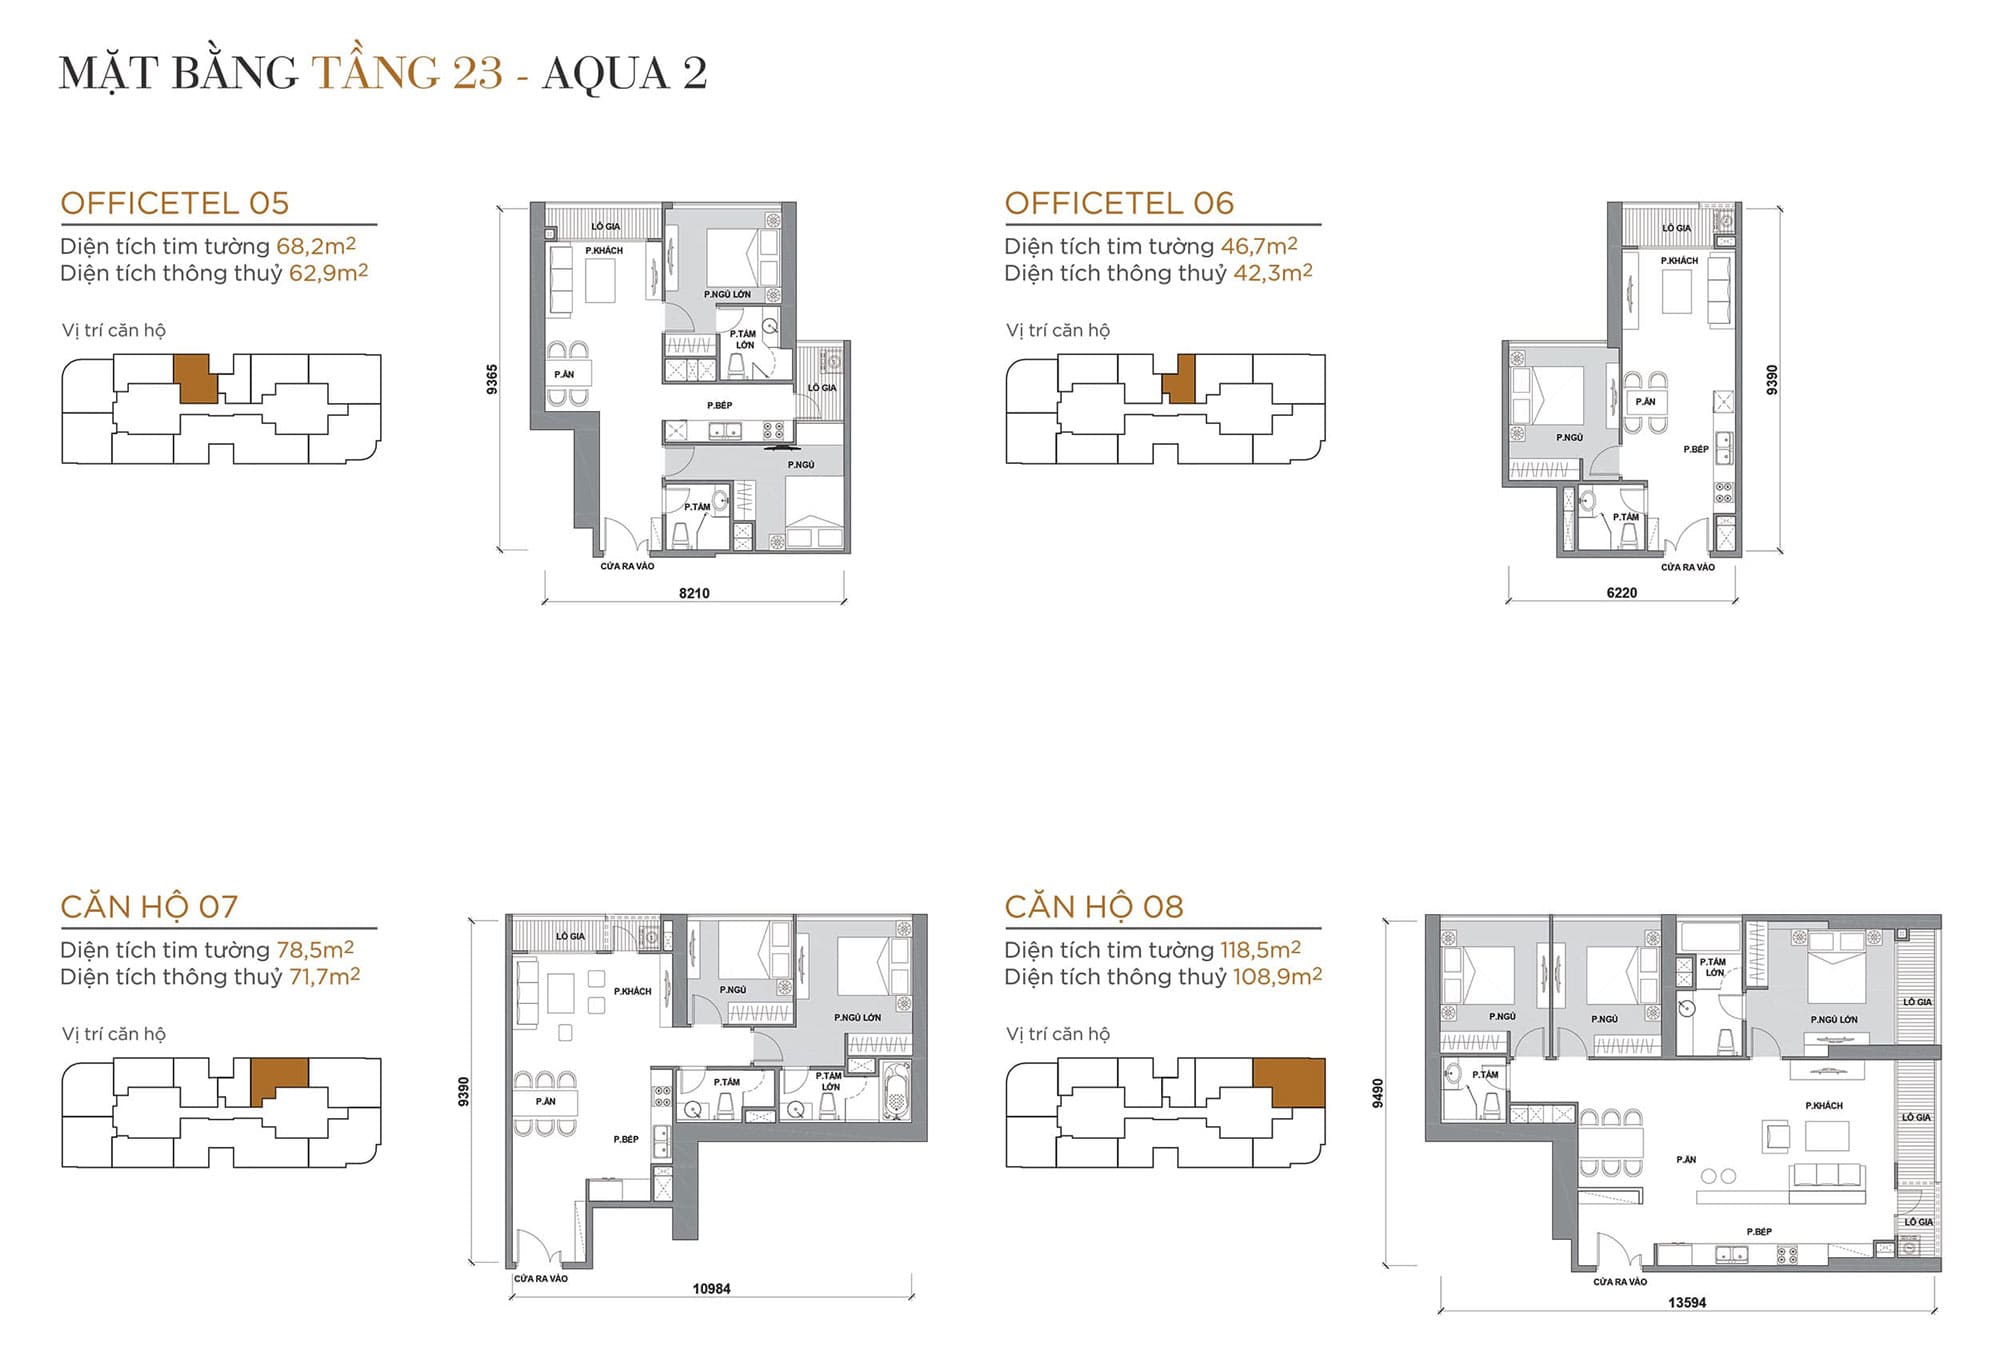 Layout căn hộ tầng 23 tòa Aqua 2 loại Officetel 05, Officetel 06, Căn hộ 07, Căn hộ 08.